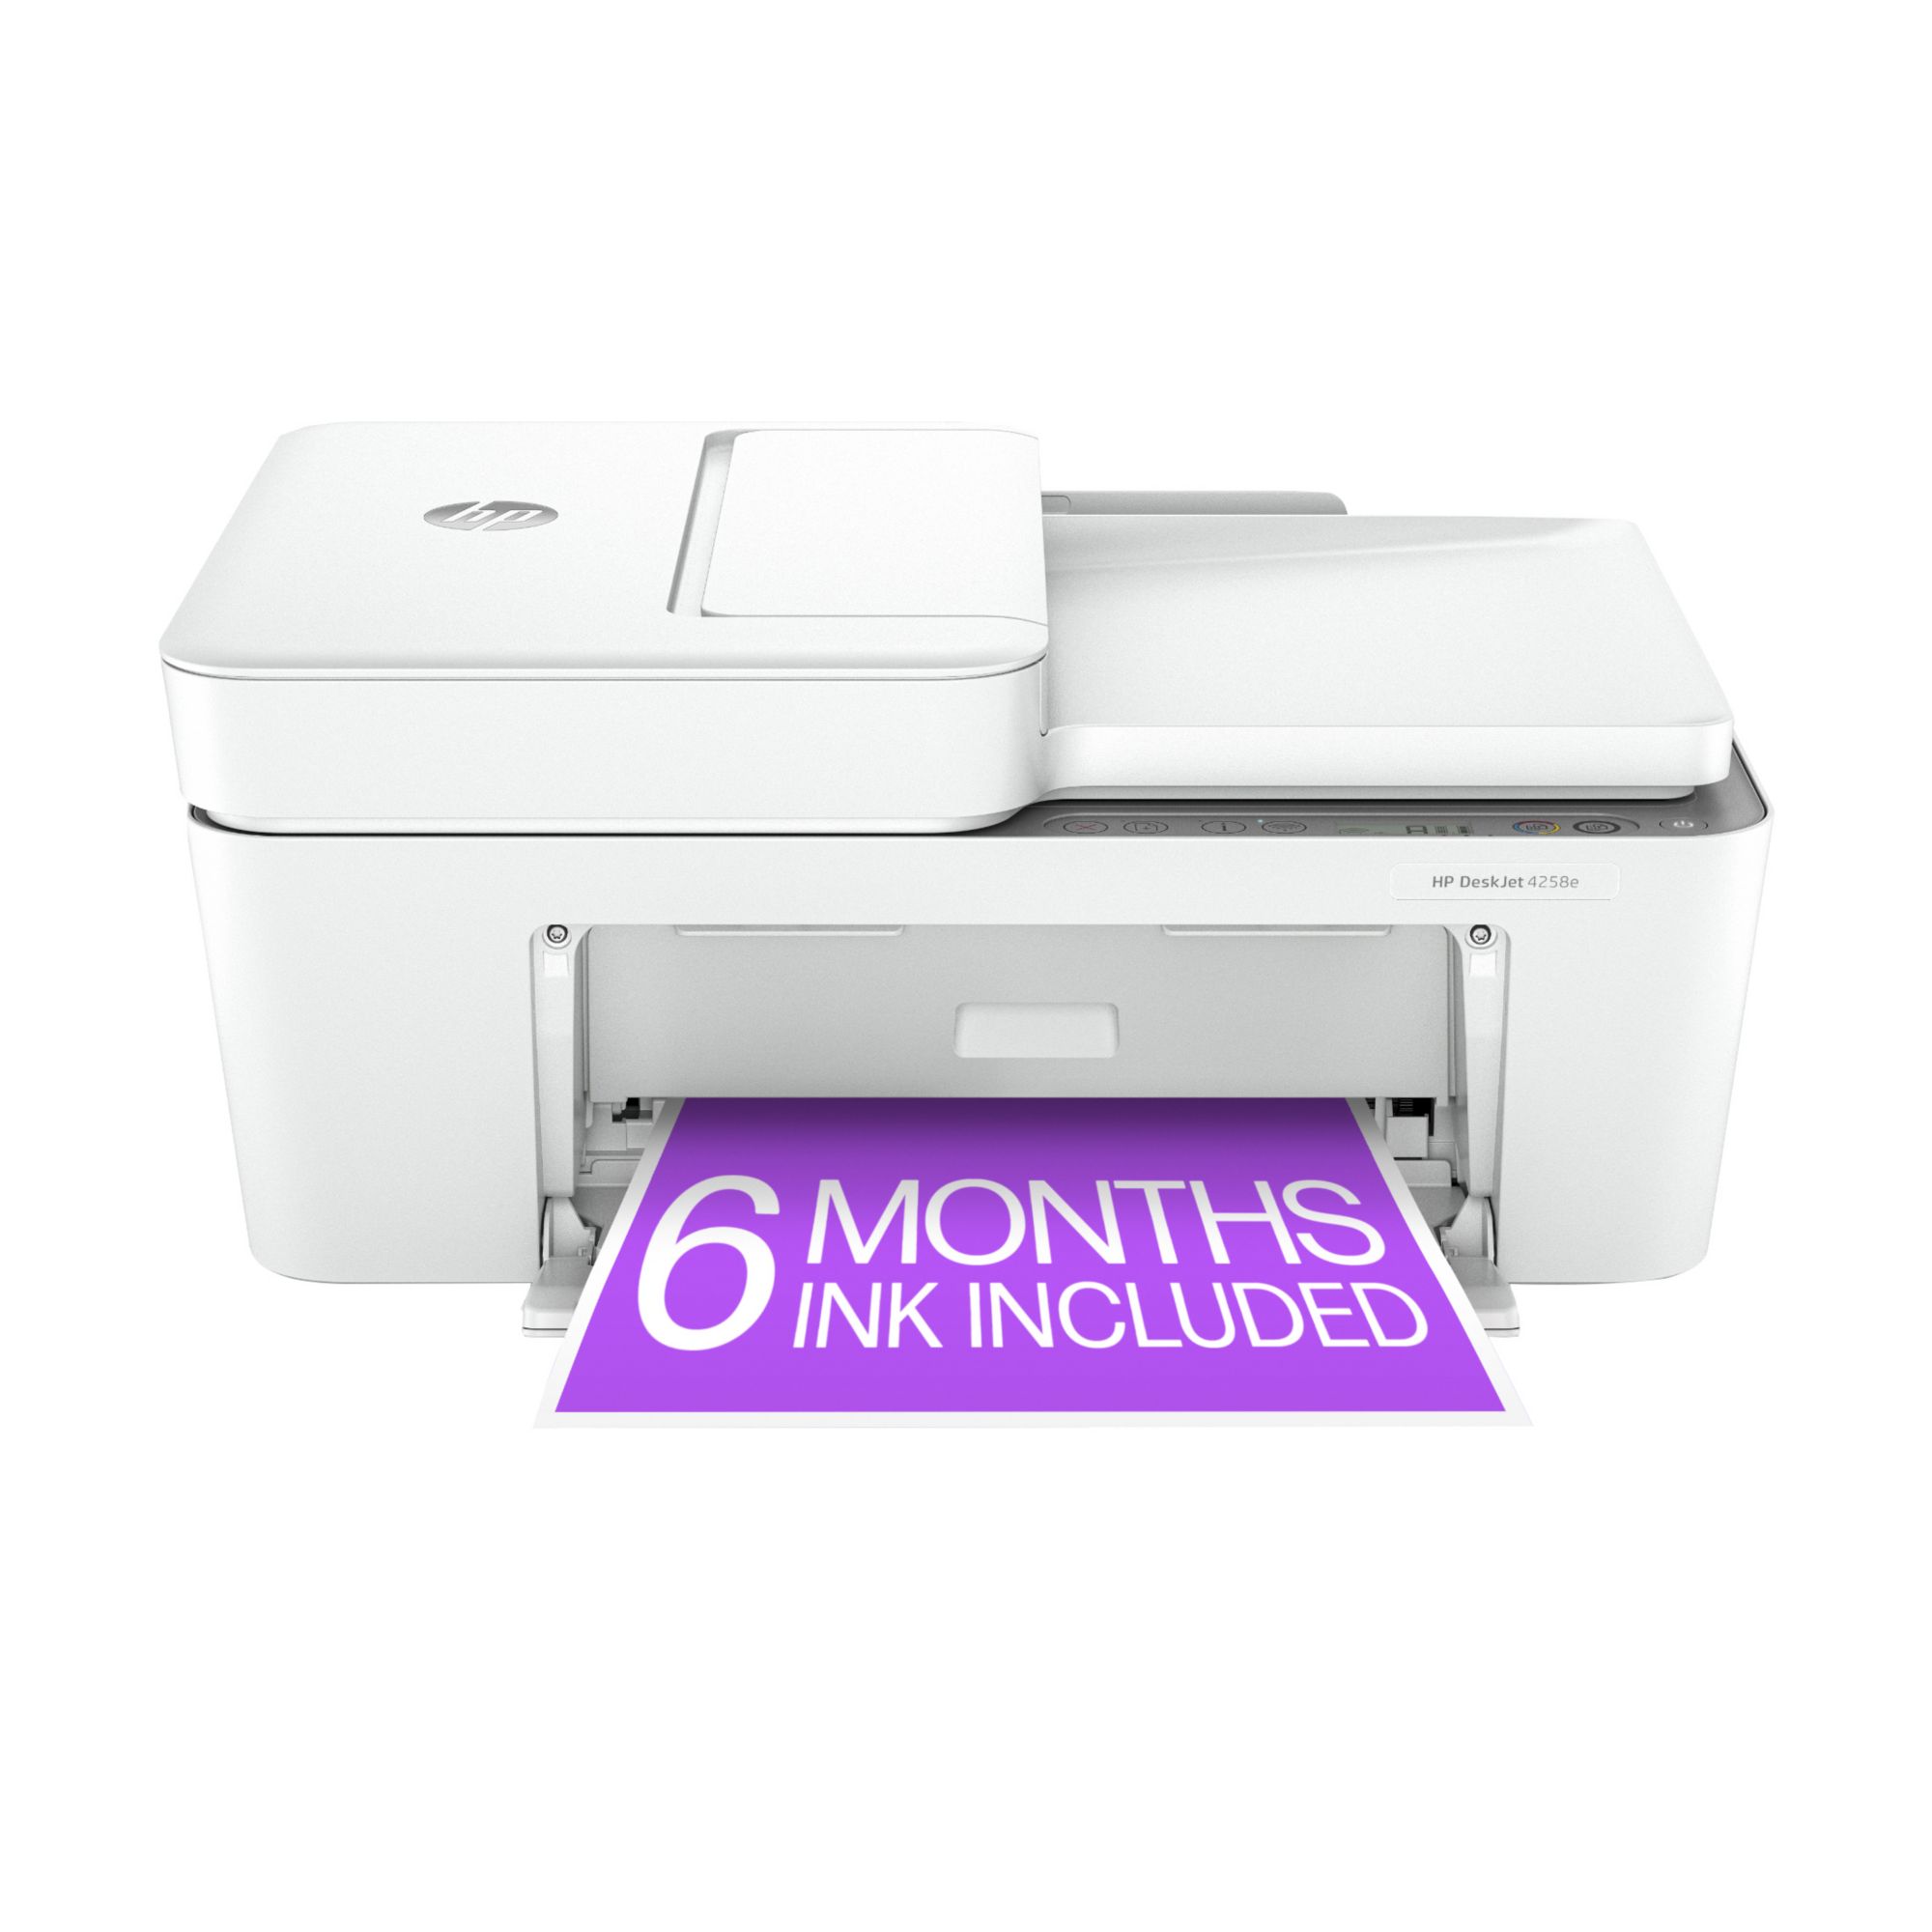 HP Inc. DeskJet 4258E All-in-One Printer